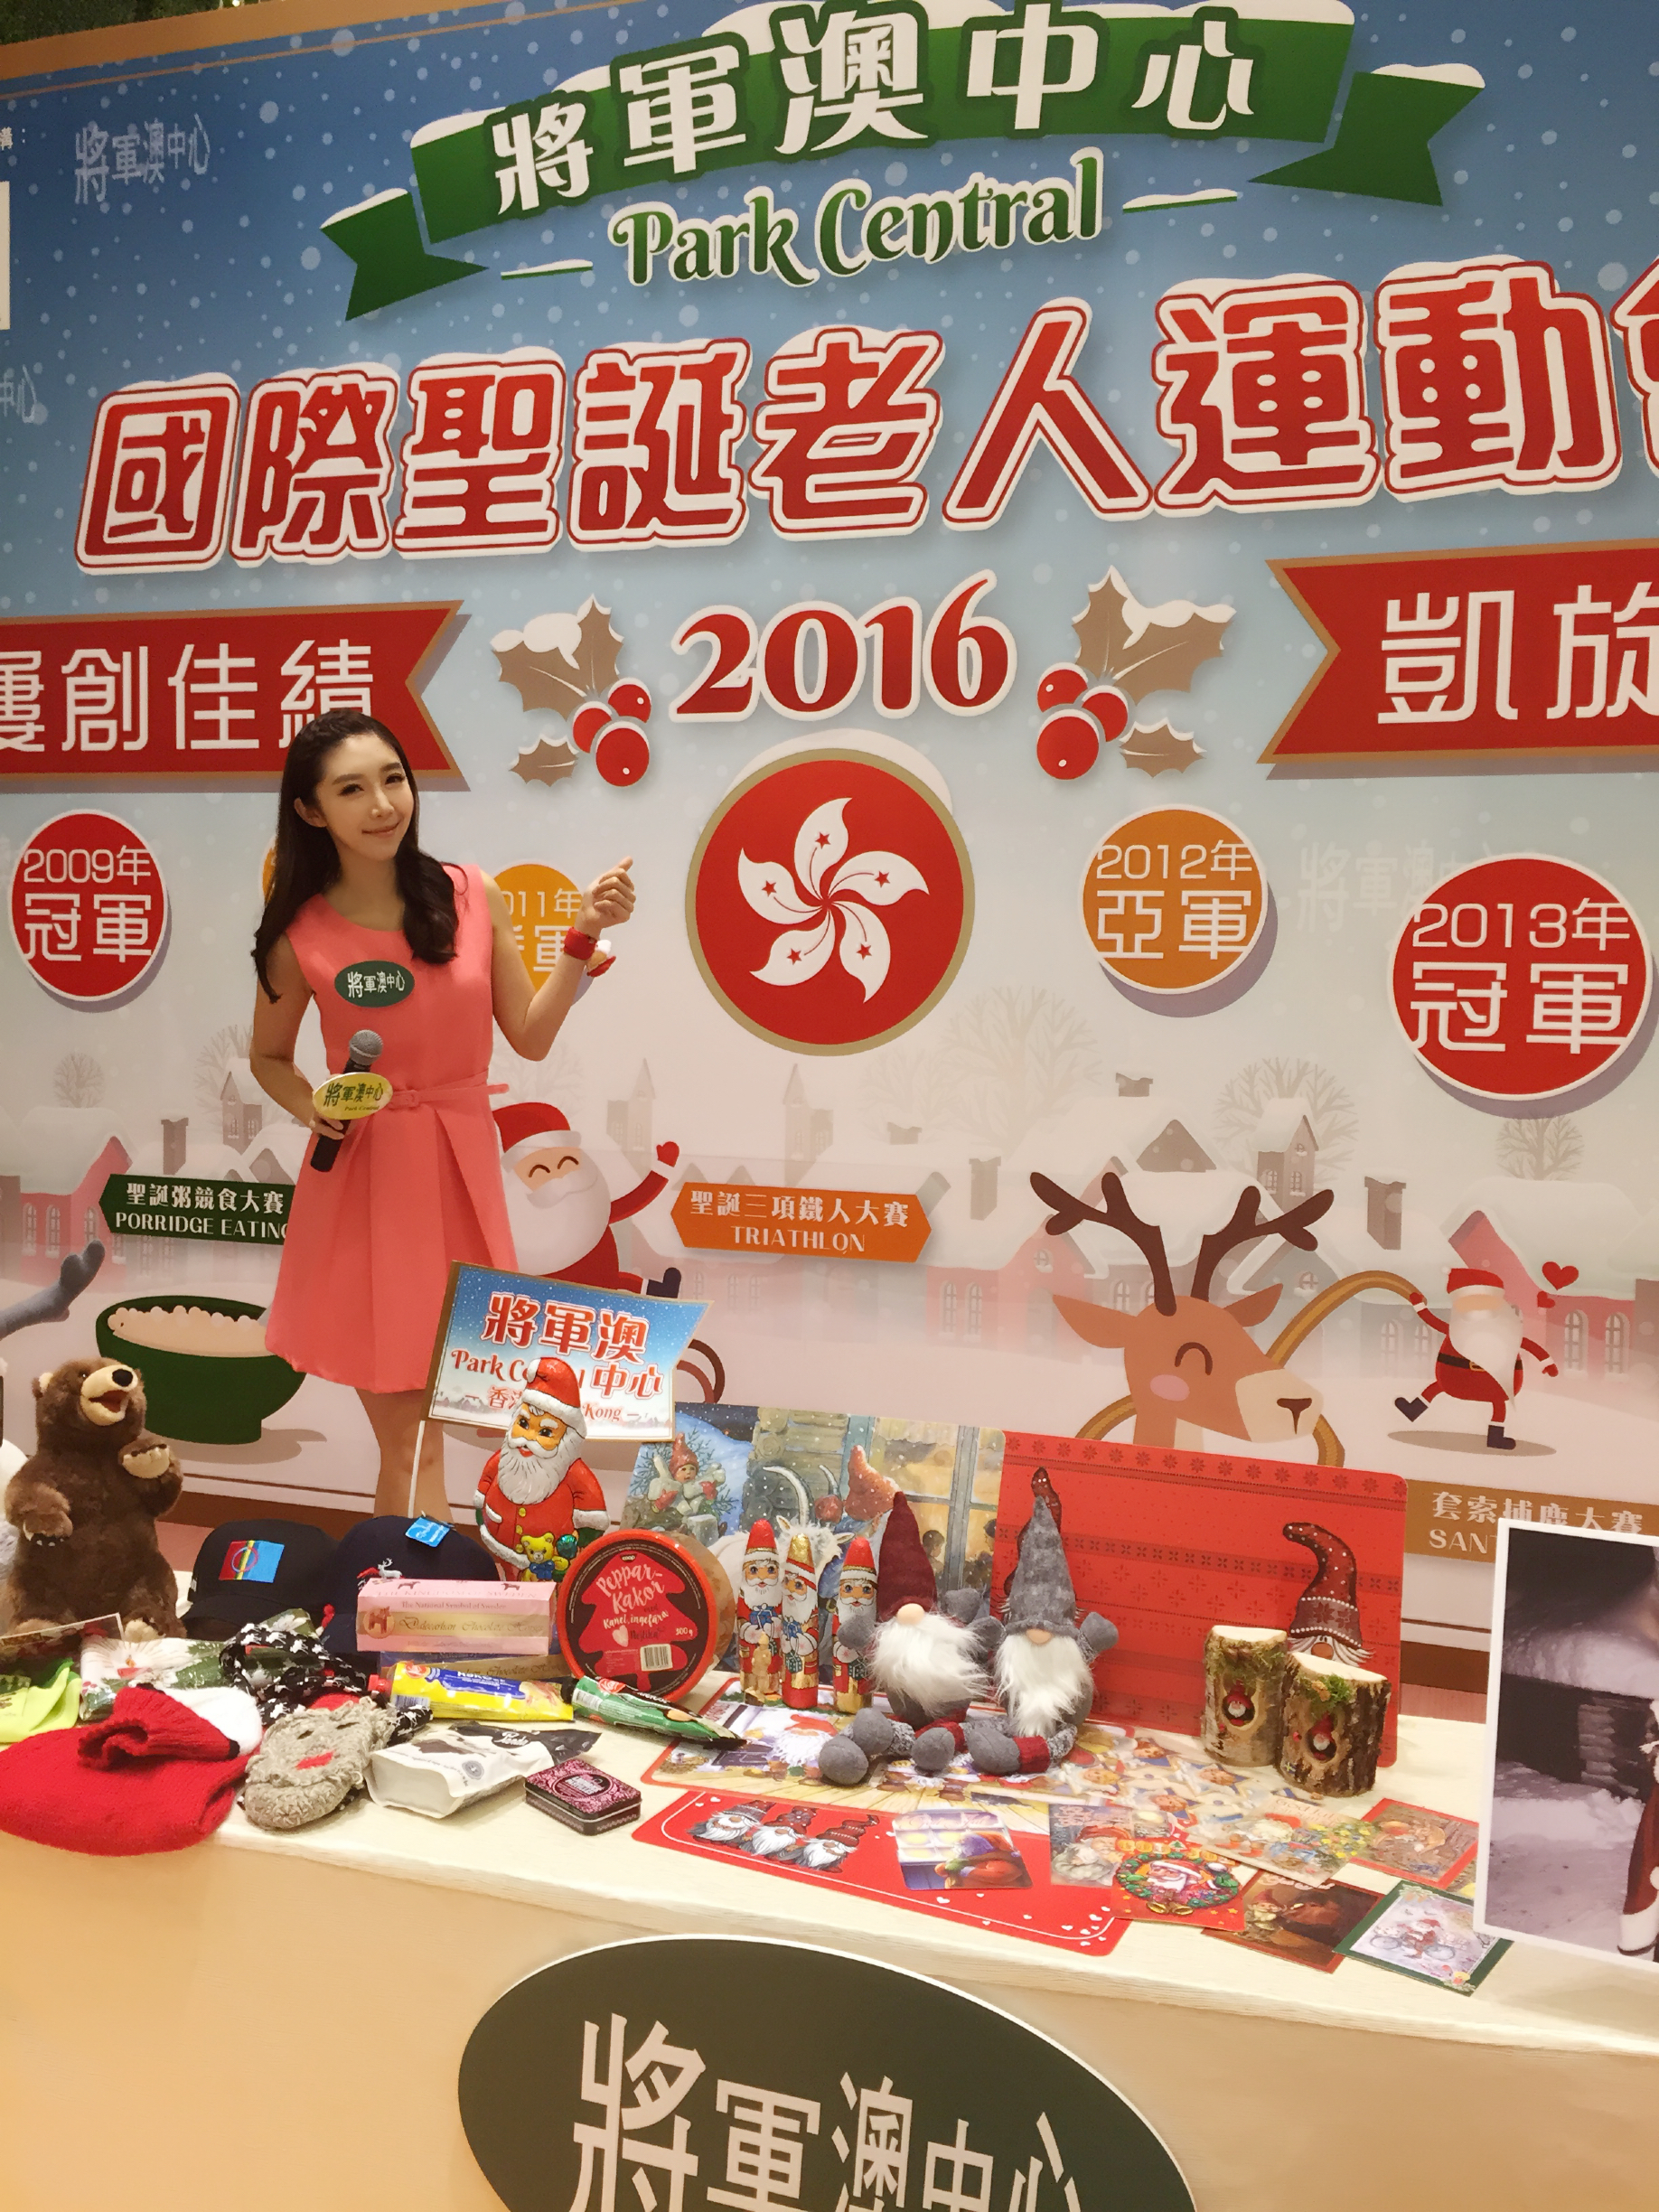 Isis Lee 李韋璇之司儀主持紀錄: 將軍澳中心－國際聖誕老人運動會 2016 分享會